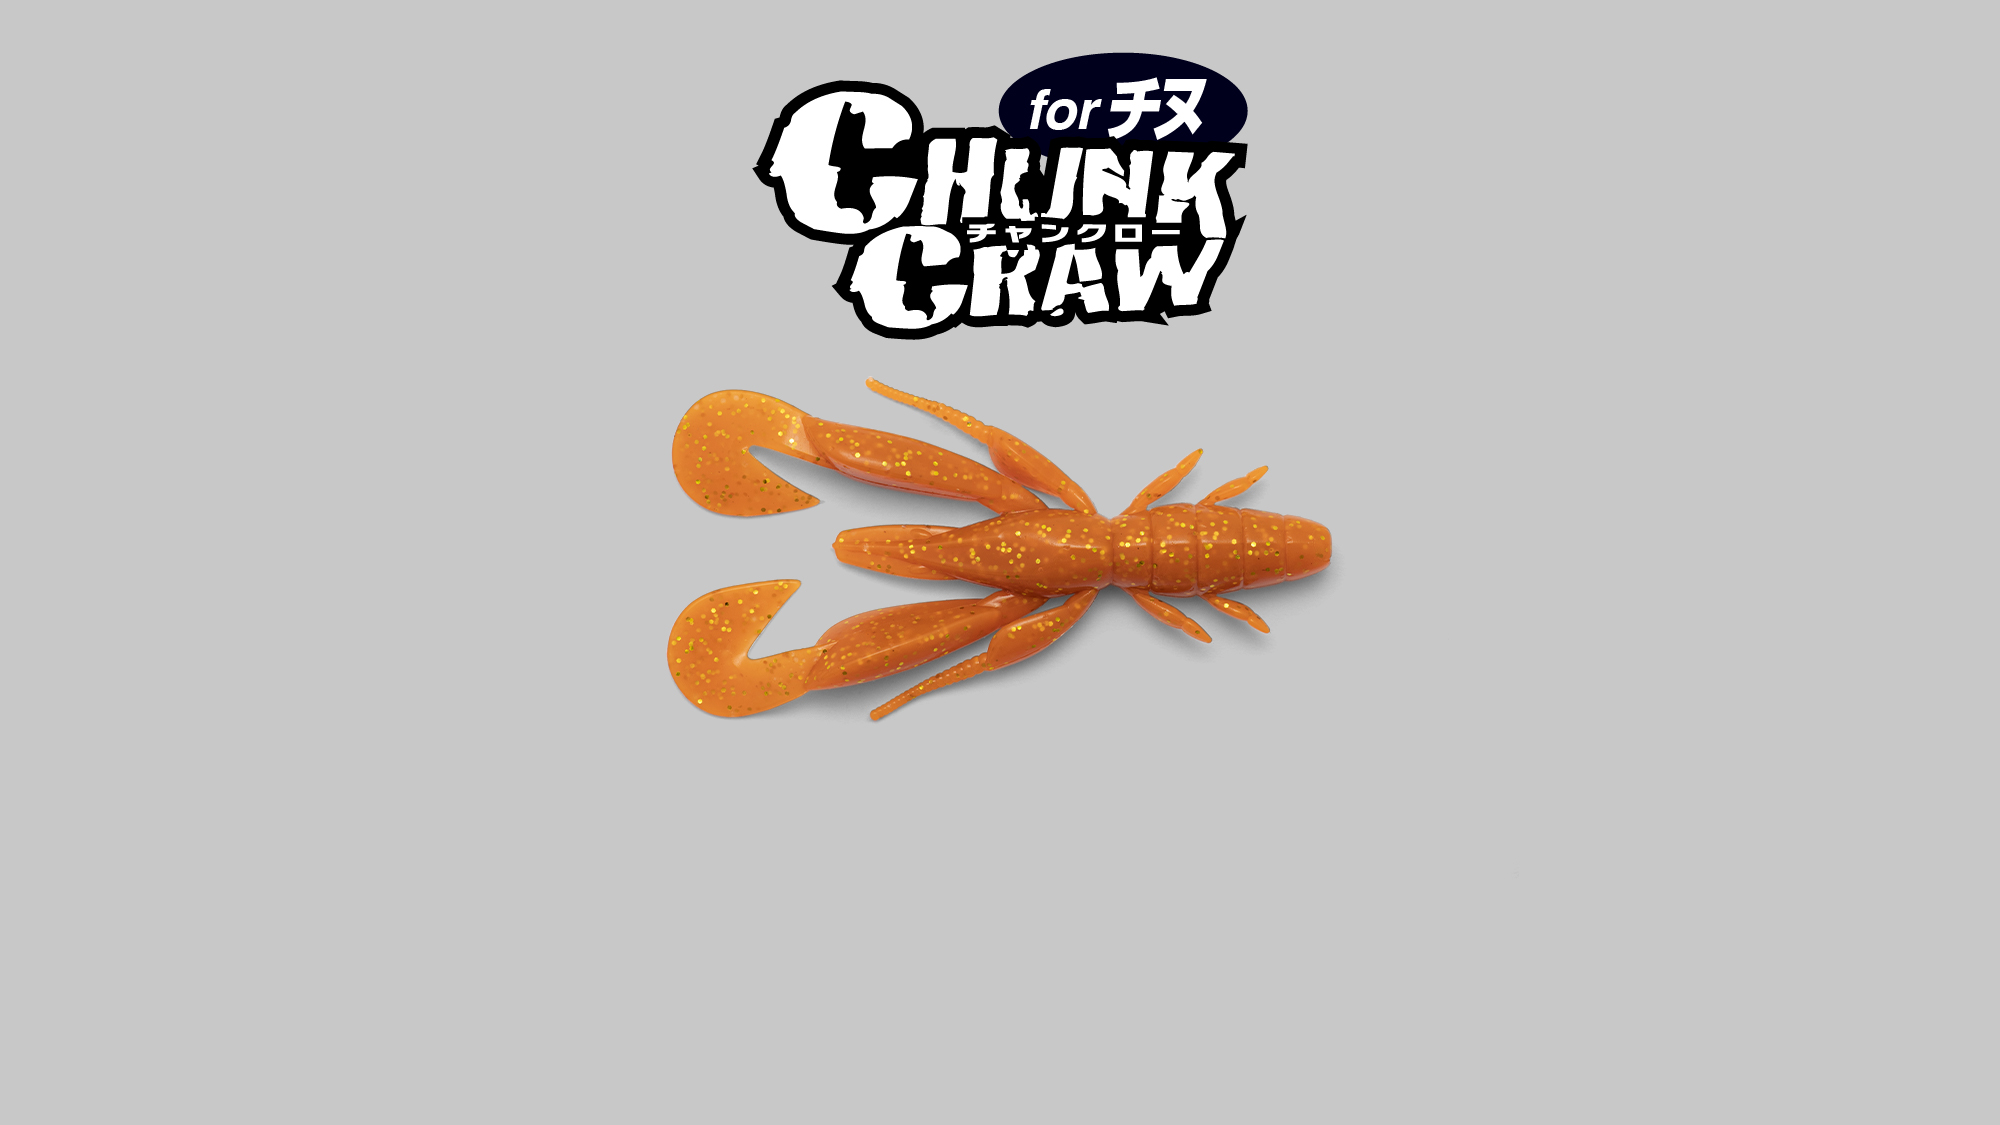 チャンクロー2.8″ for チヌ CHUNKCRAW 2.8″ for チヌ